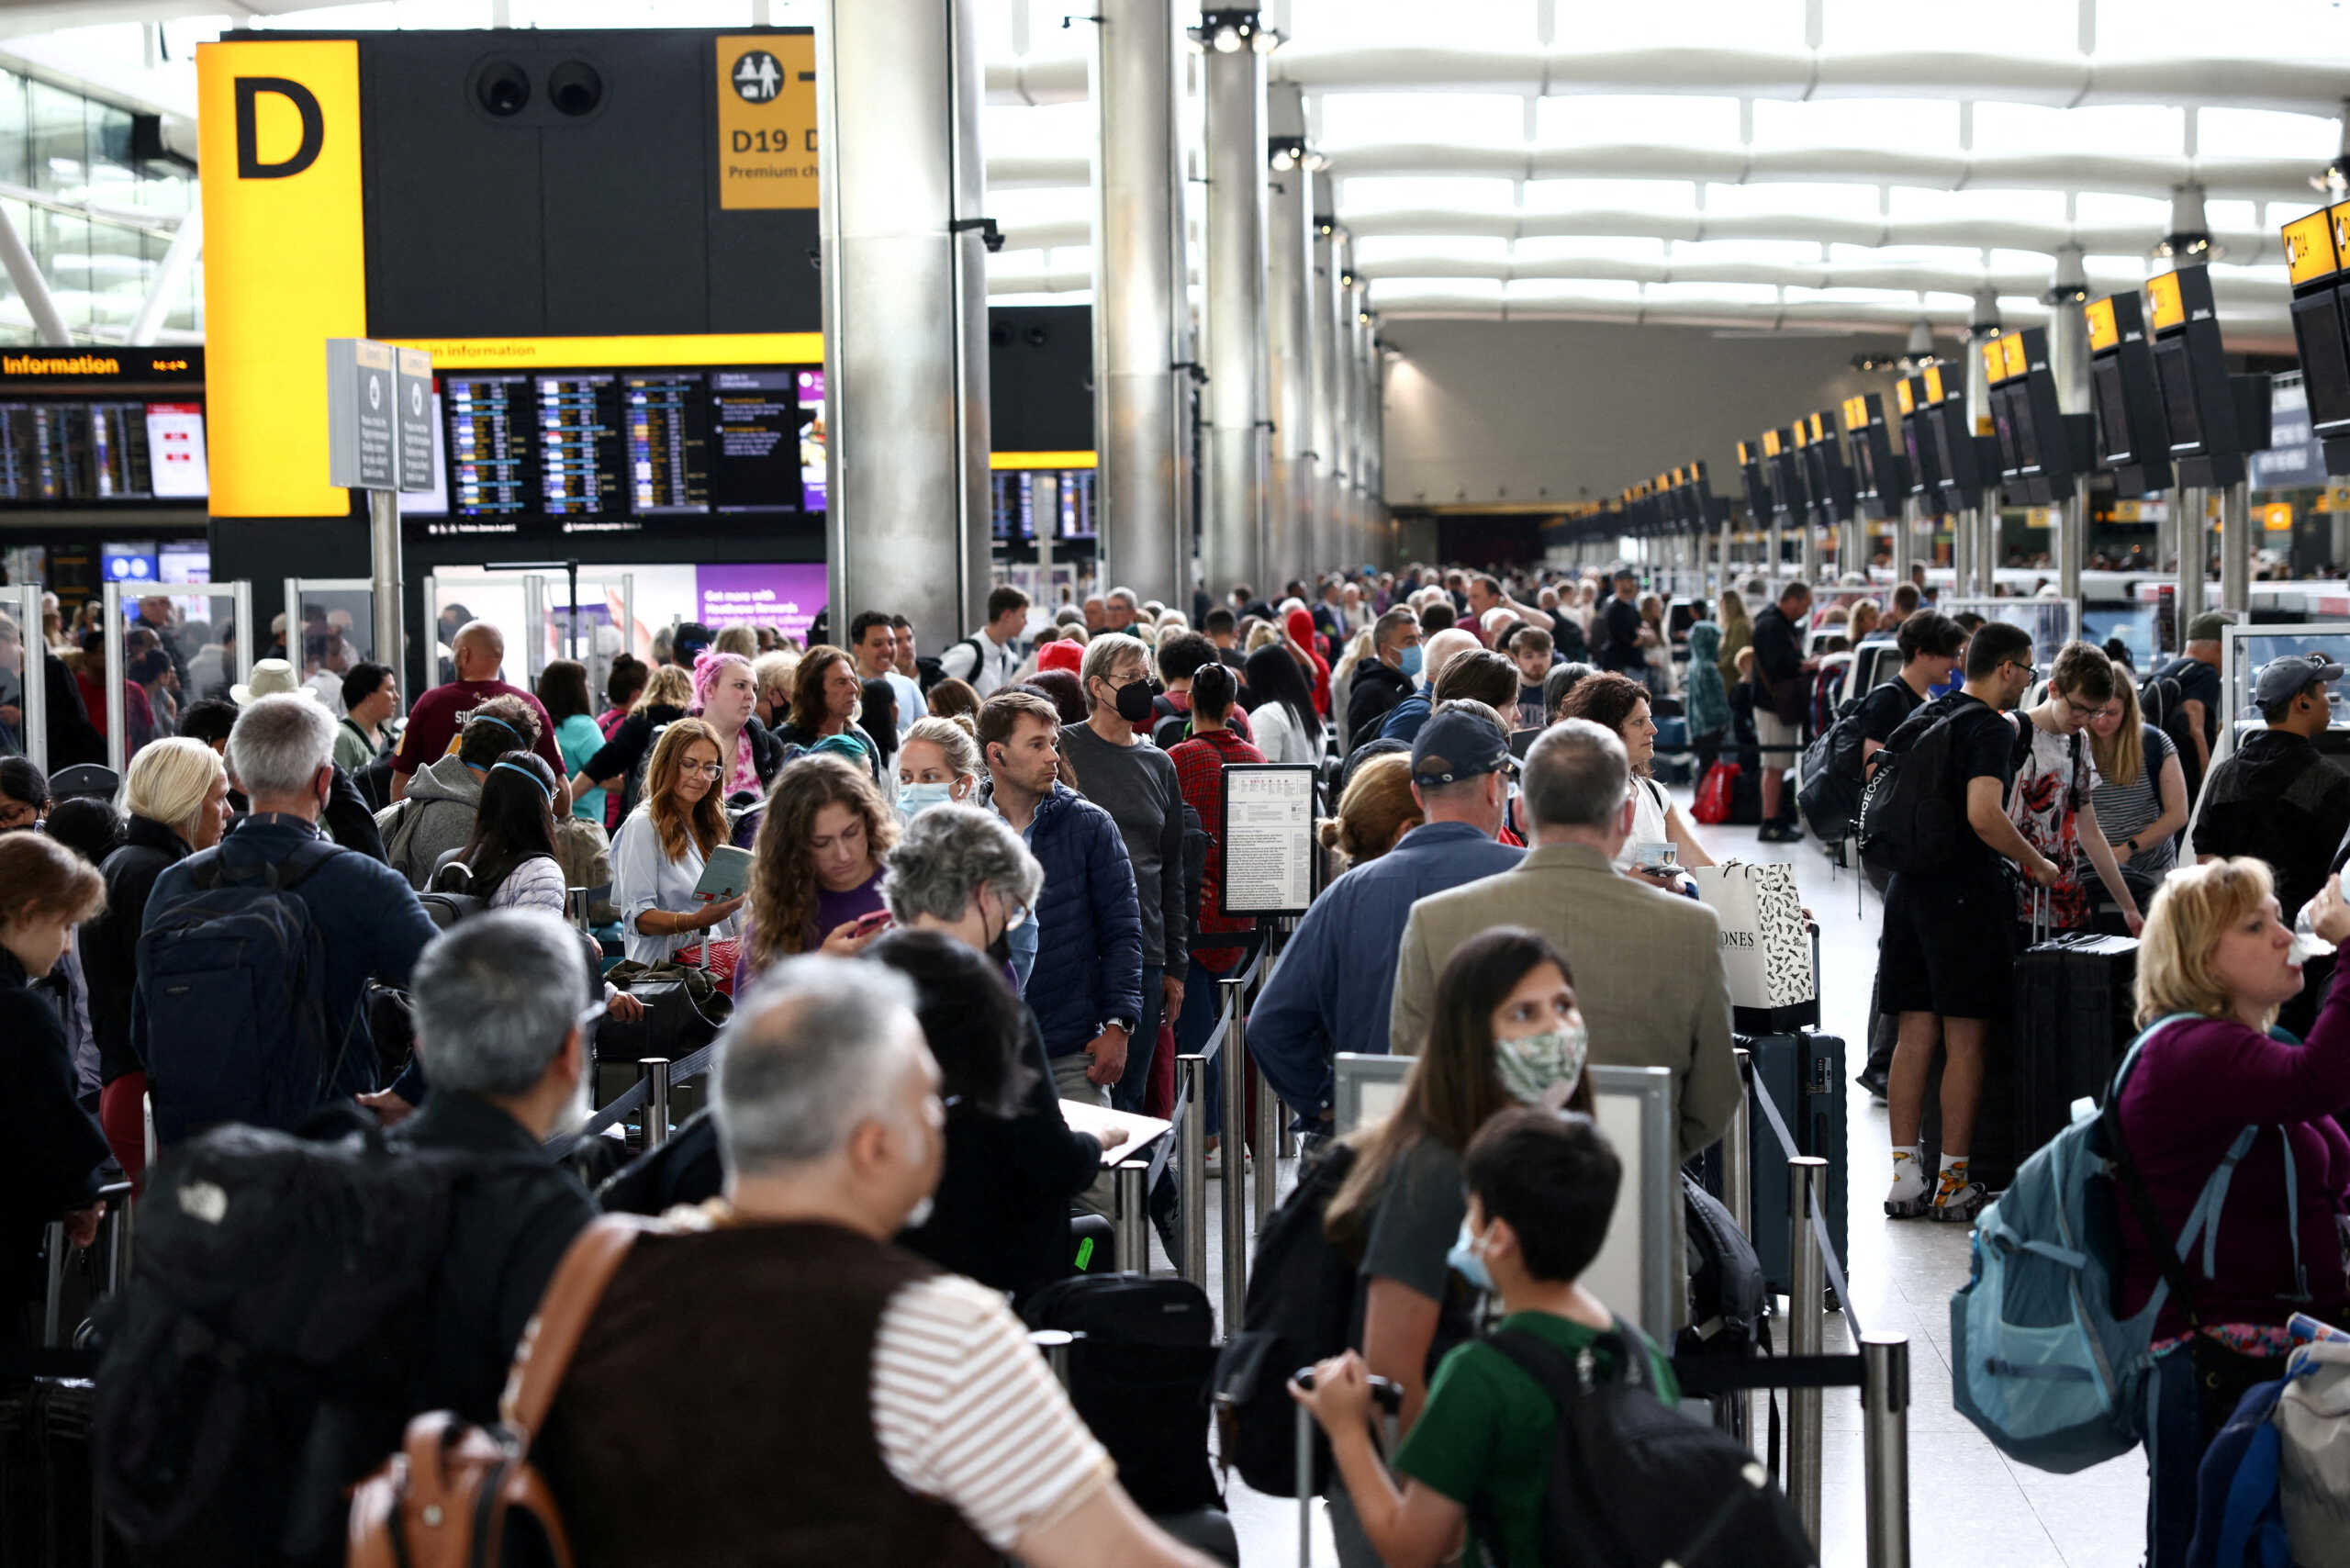 Βρετανία: Μεγάλες καθυστερήσεις στα αεροδρόμια, μετά από πρόβλημα στο ηλεκτρονικό σύστημα συνοριακού ελέγχου